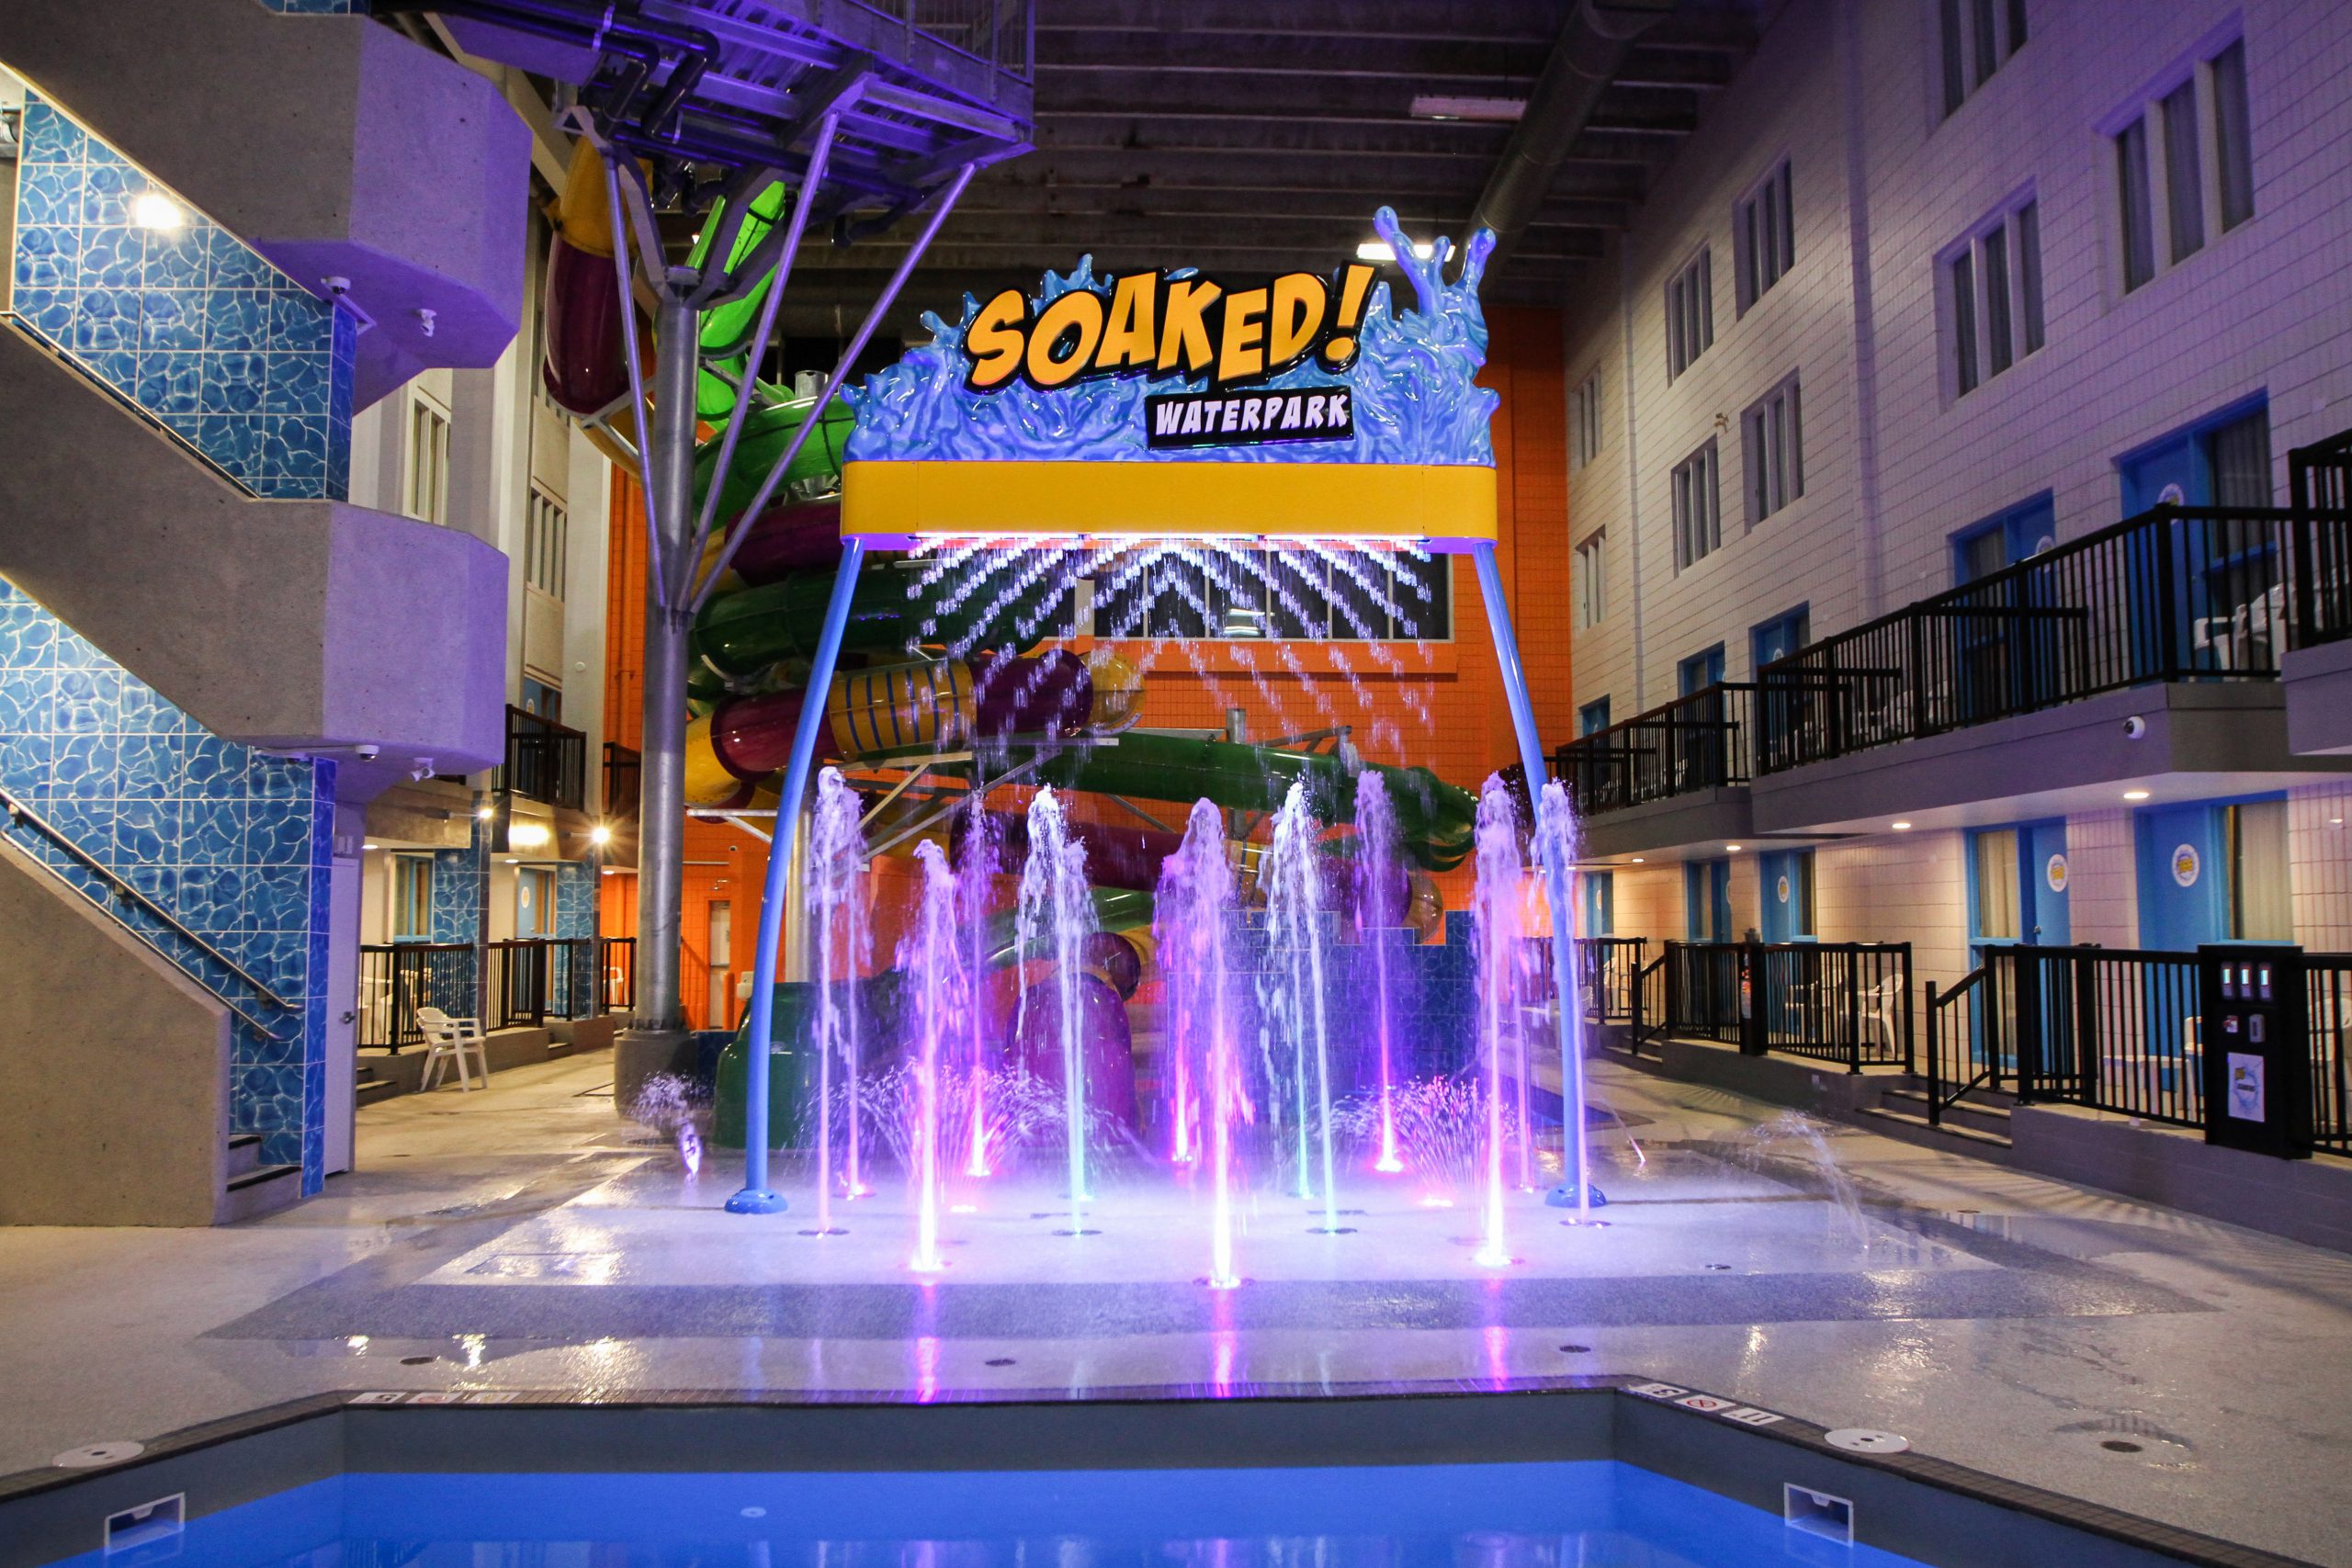 Soaked! Waterpark Best Hotel Waterslides Regina